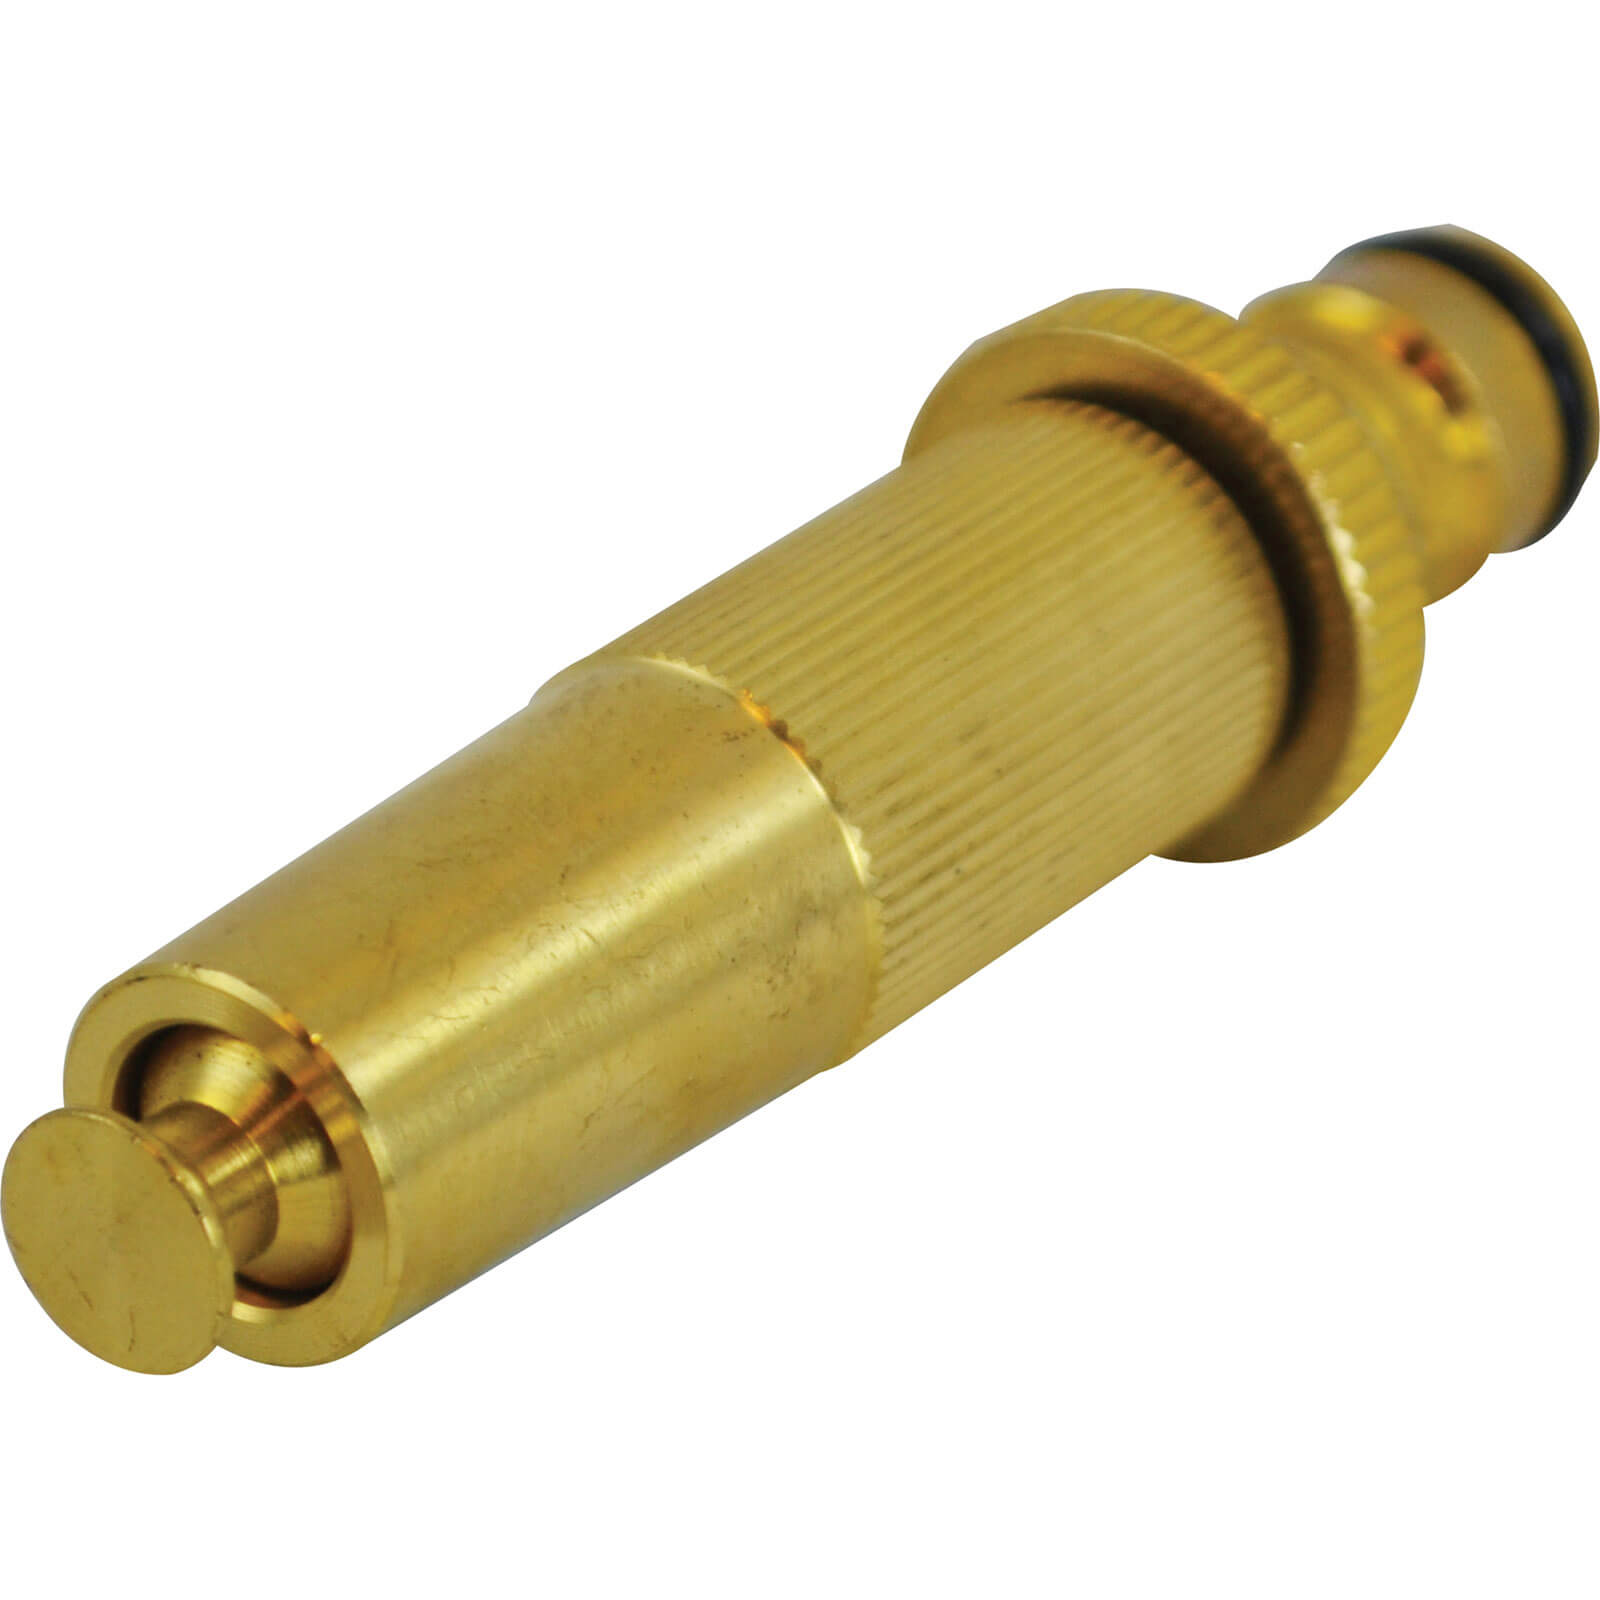 Photo of Faithfull Brass Garden Adjustable Spray Nozzle